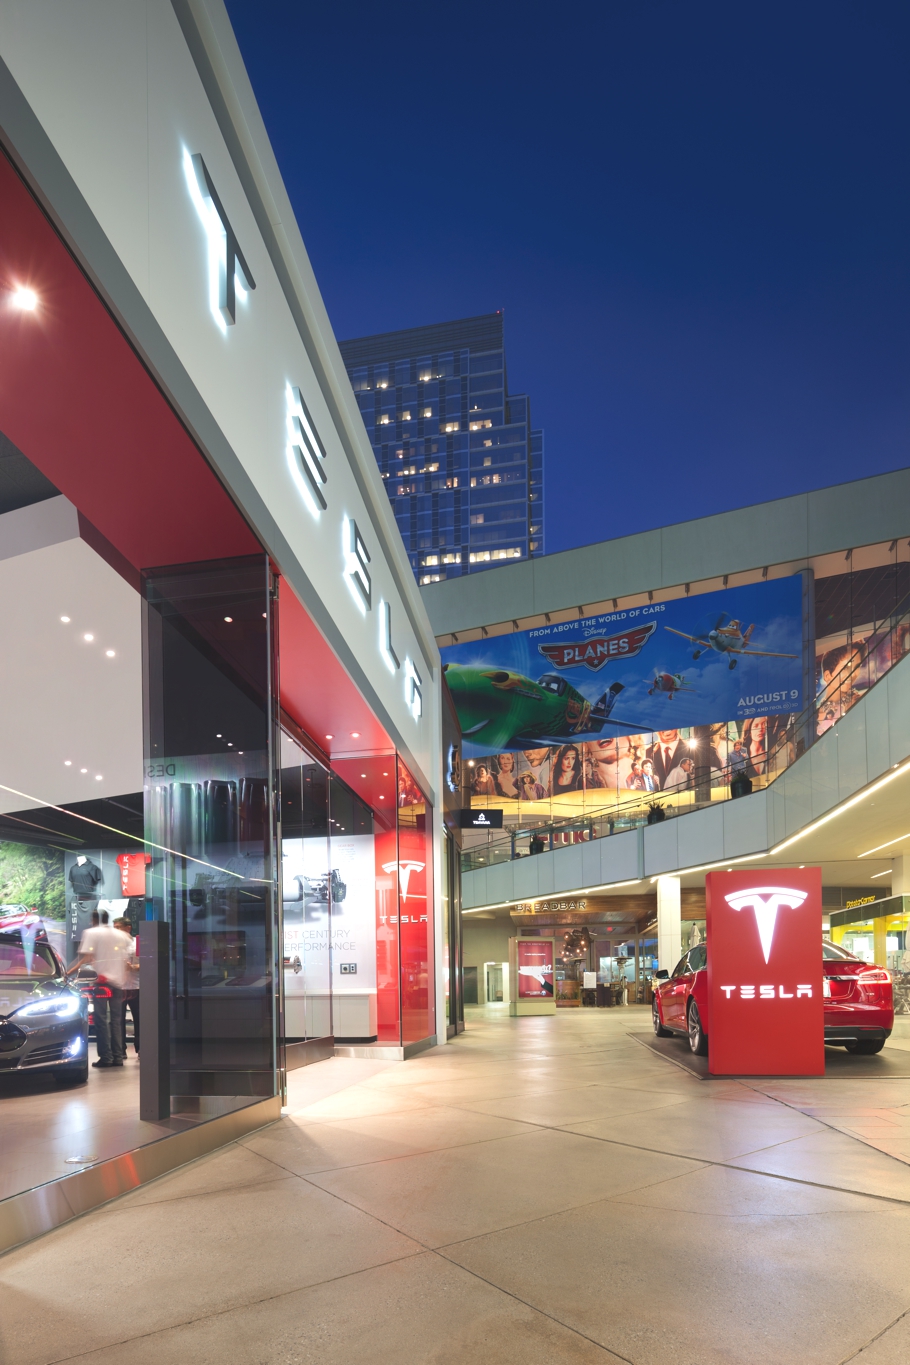 Креативный торговый дом Tesla от бюро MBH Architects в Калифорнии